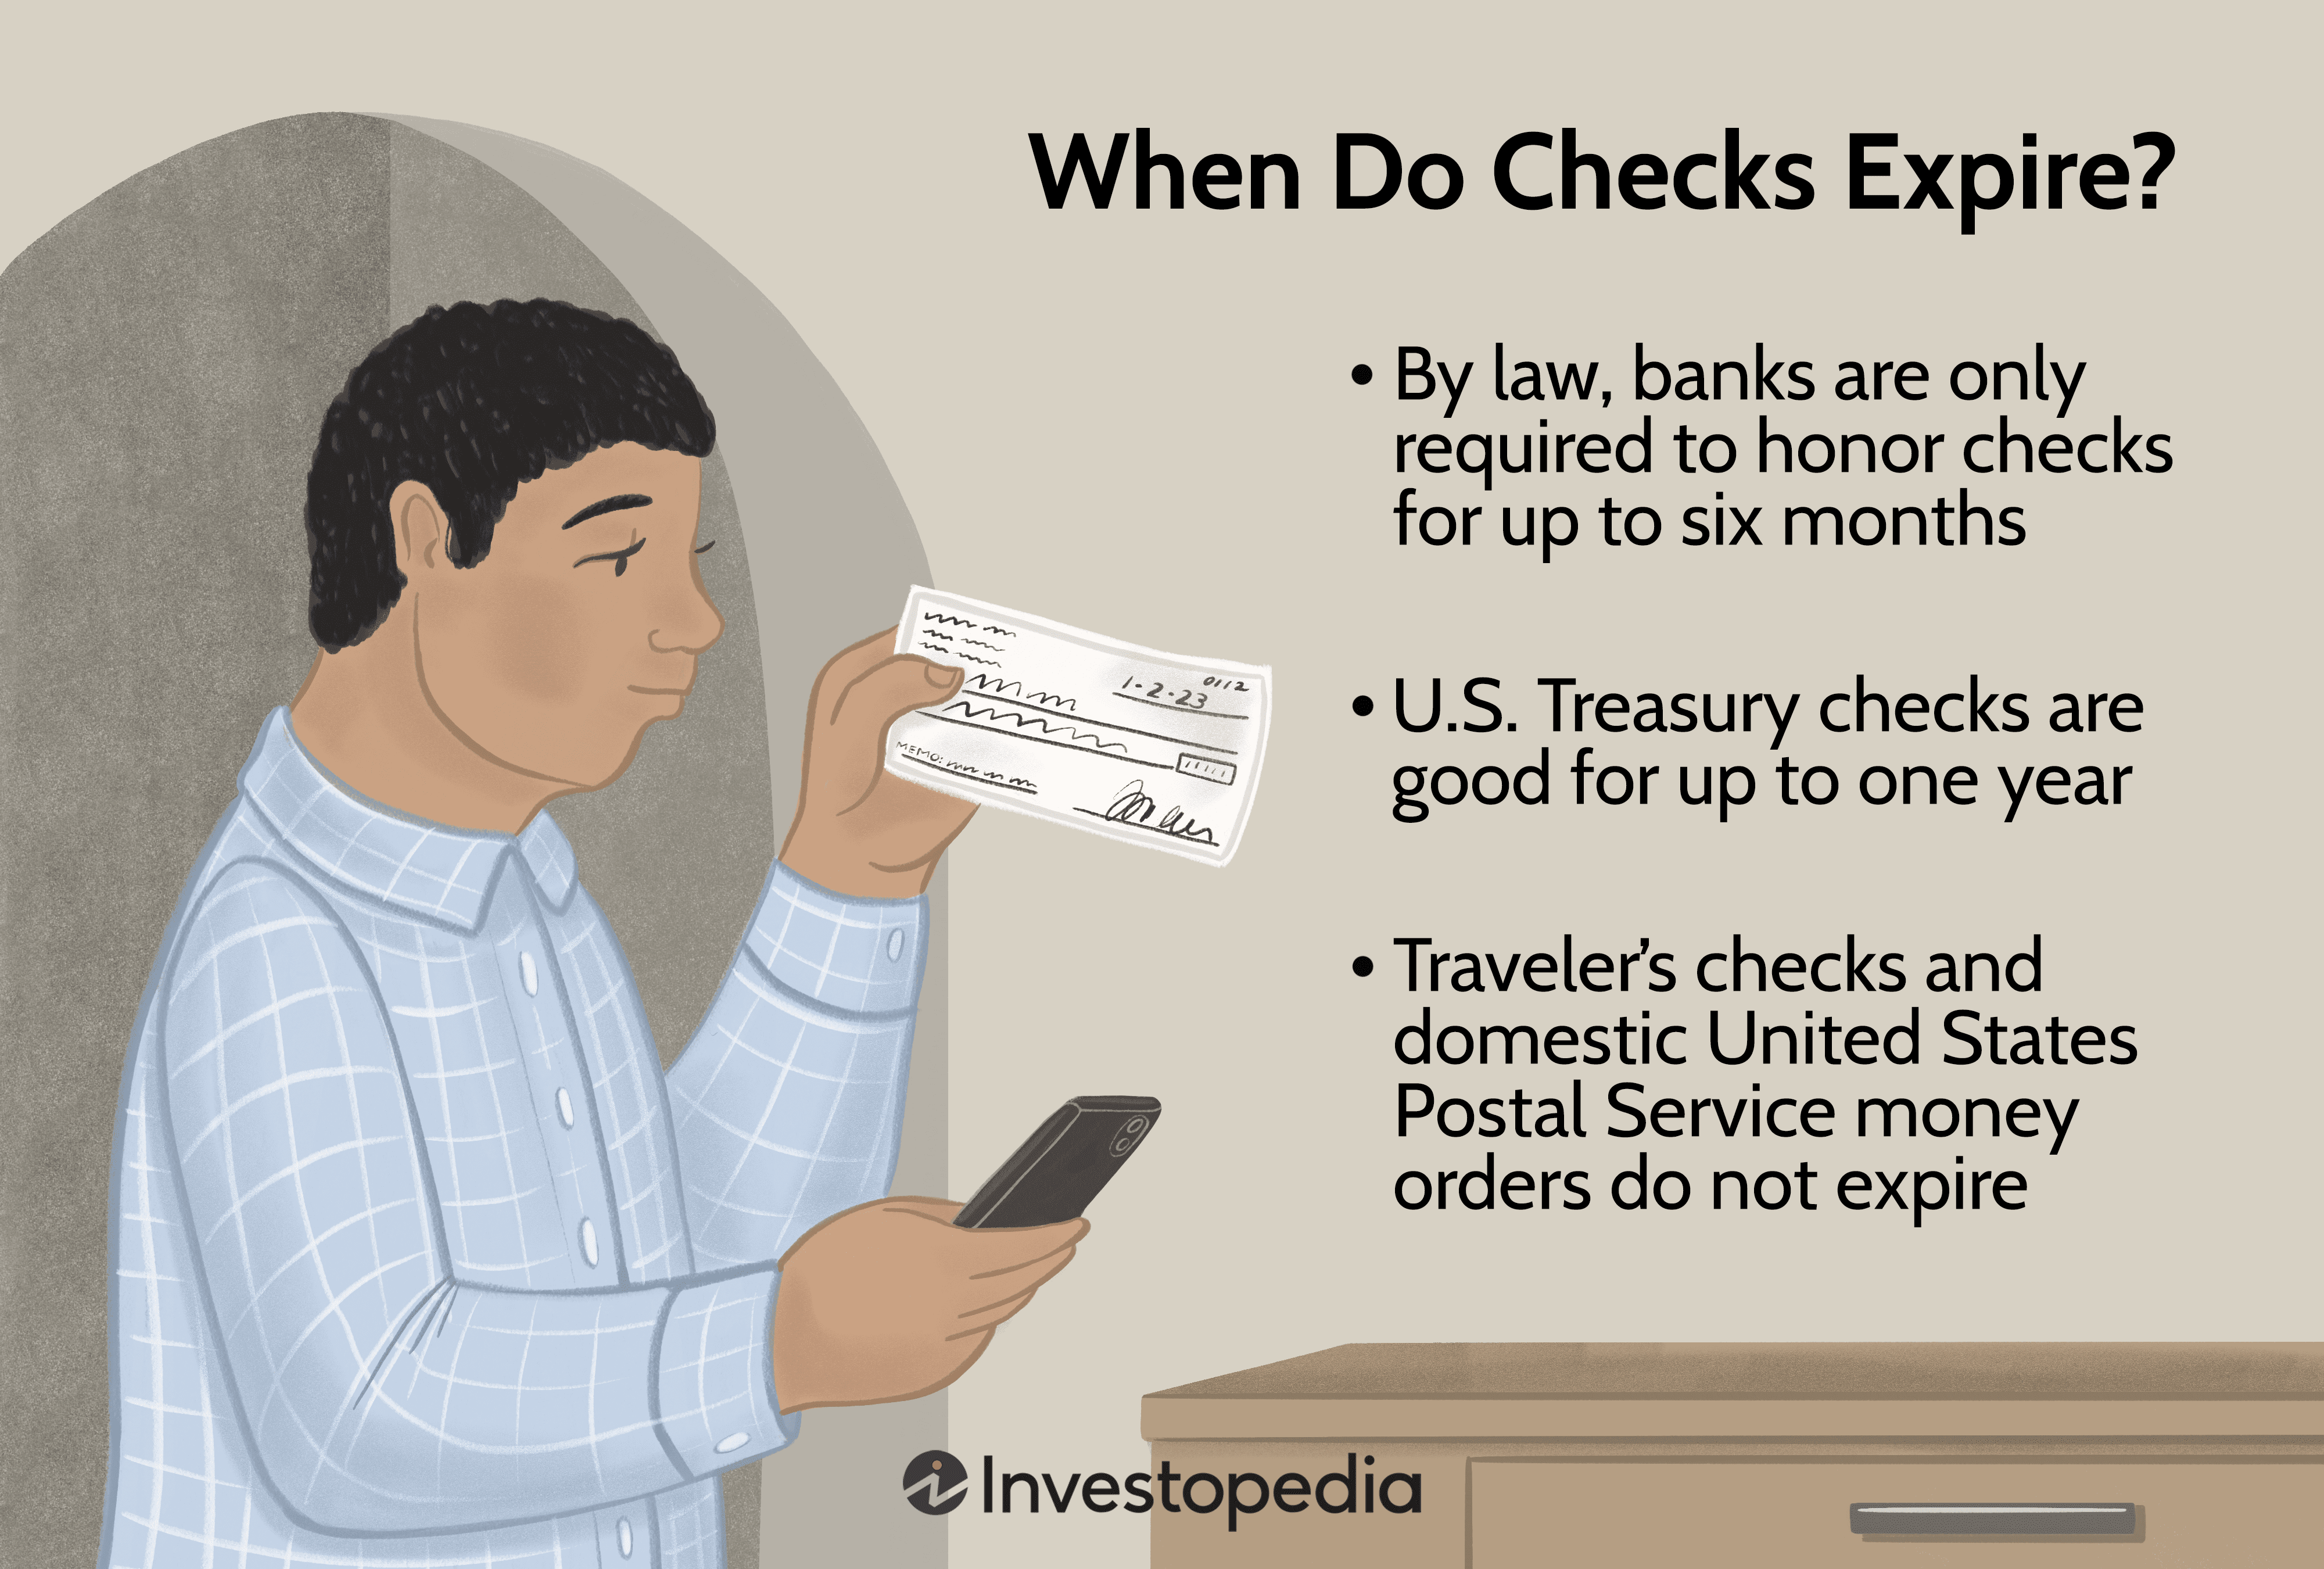 When Do Checks Expire?